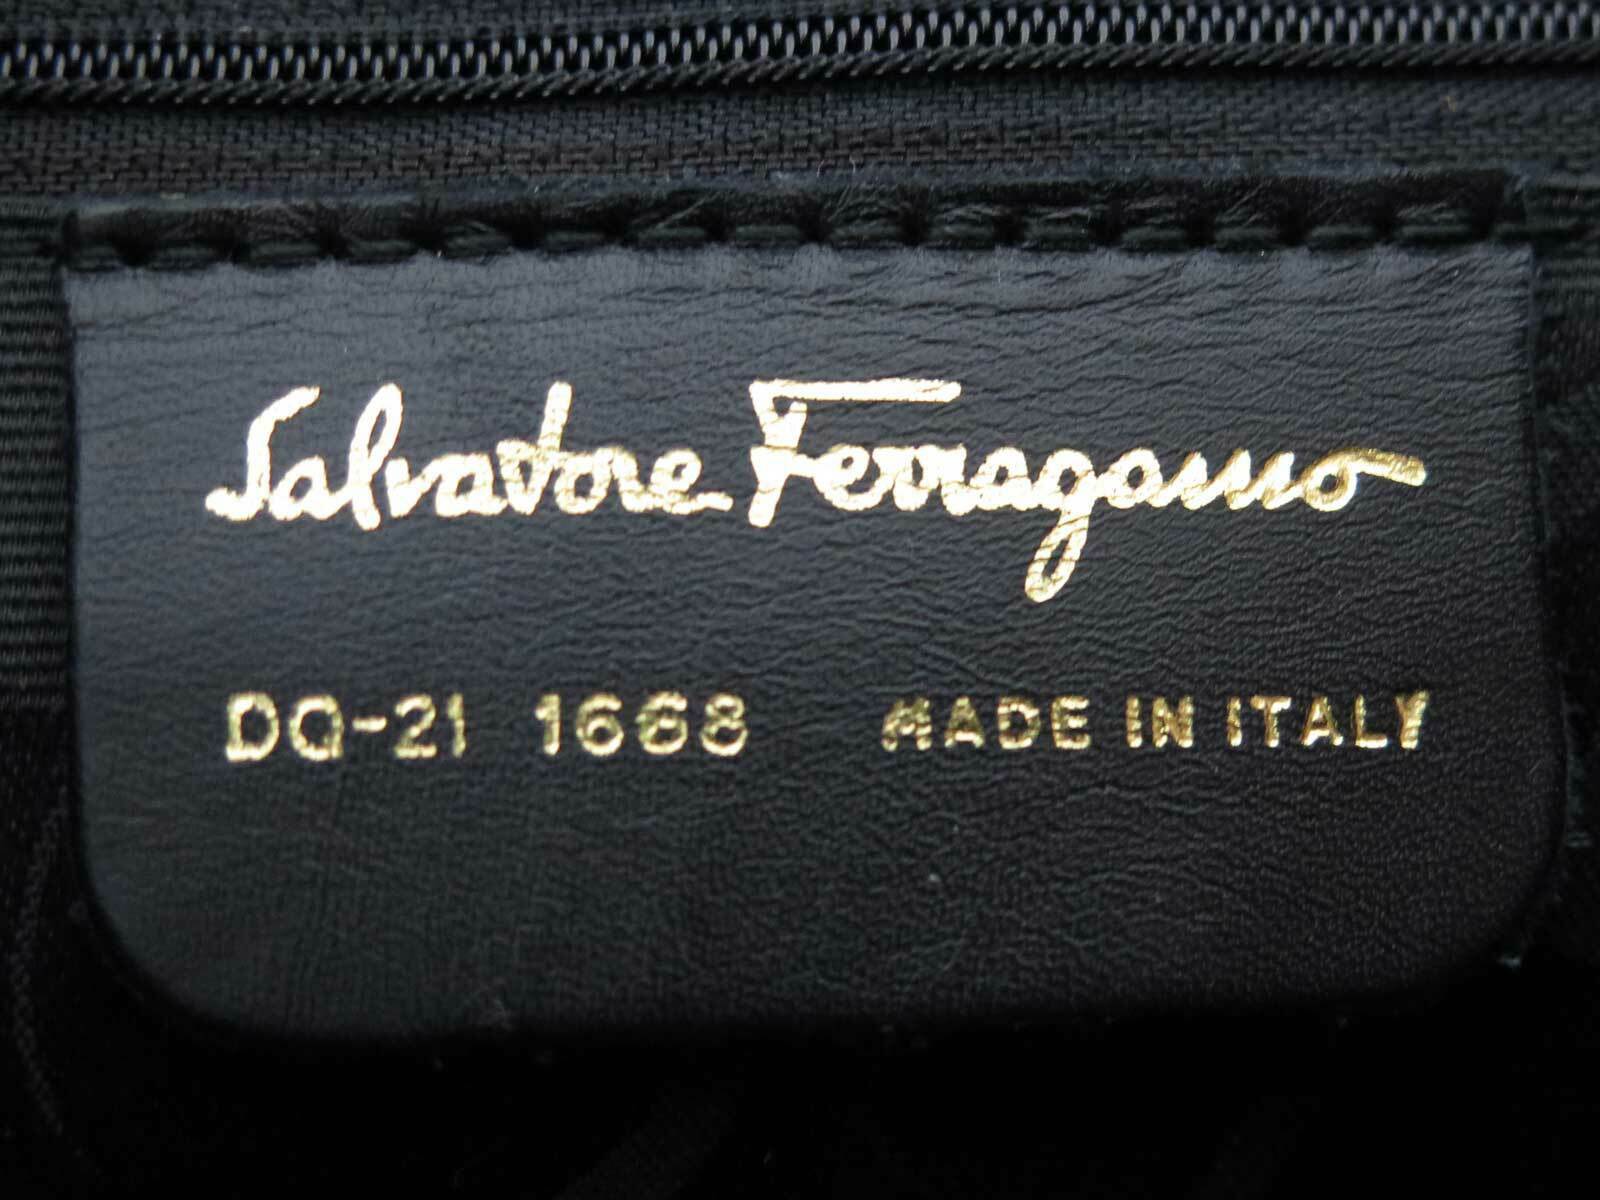 Salvatore Ferragamo Wallpapers - Top Free Salvatore Ferragamo ...